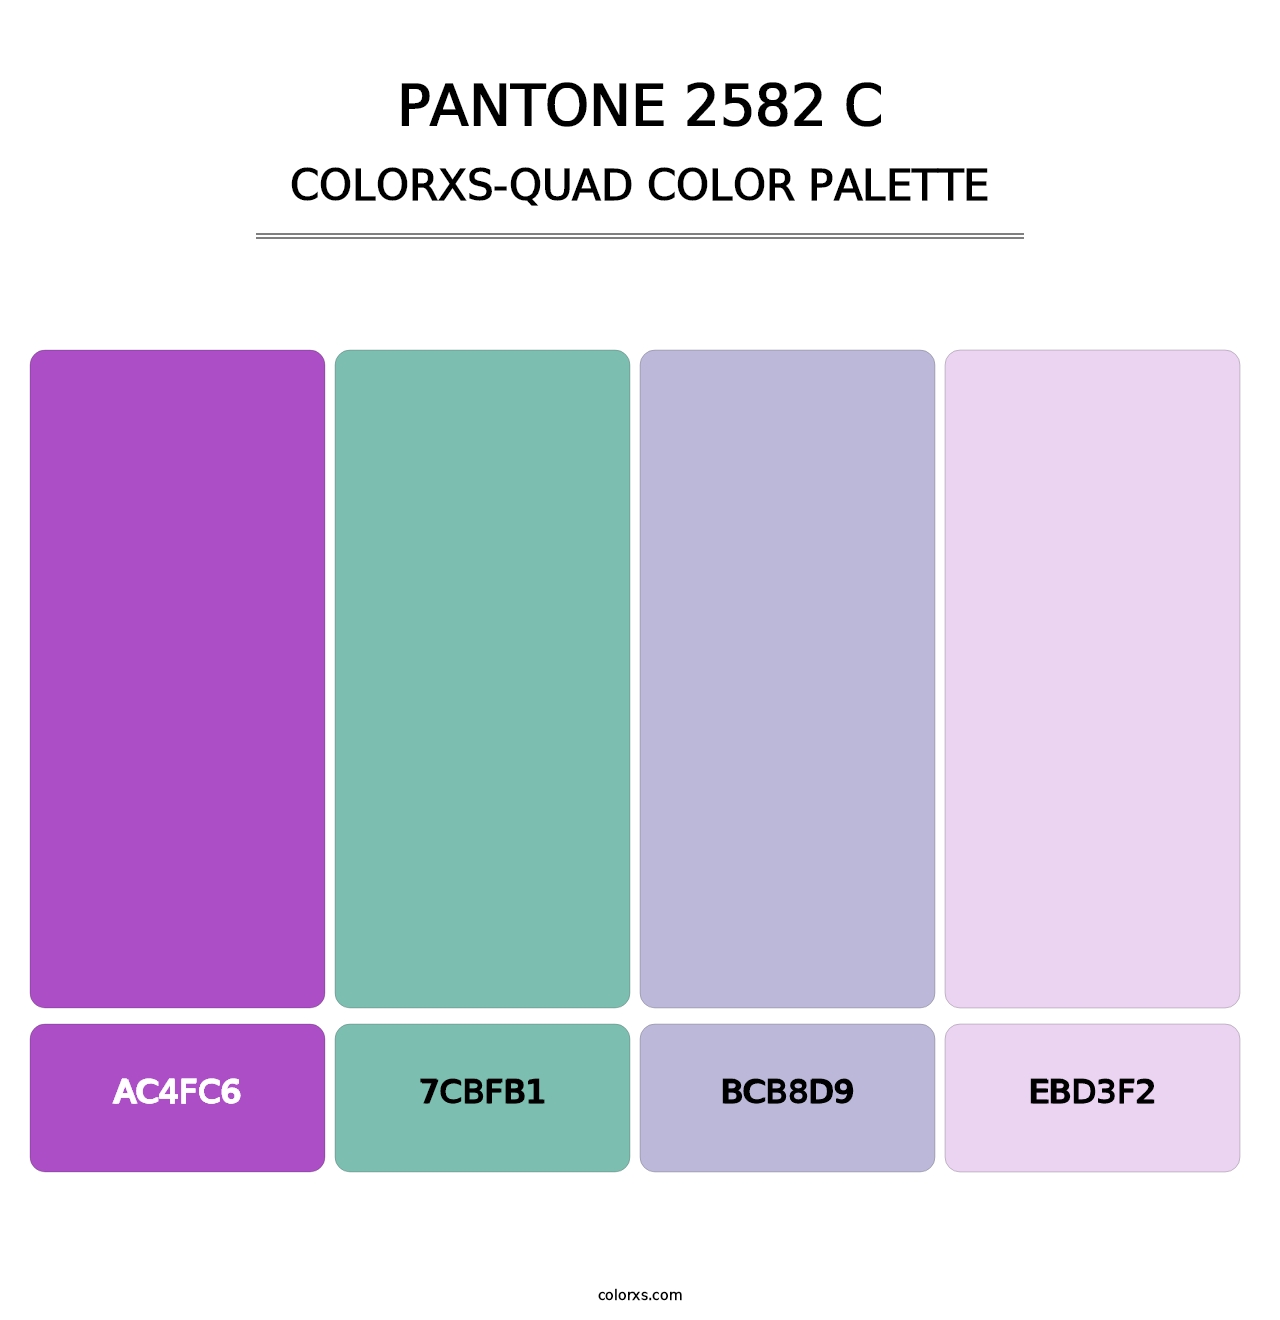 PANTONE 2582 C - Colorxs Quad Palette